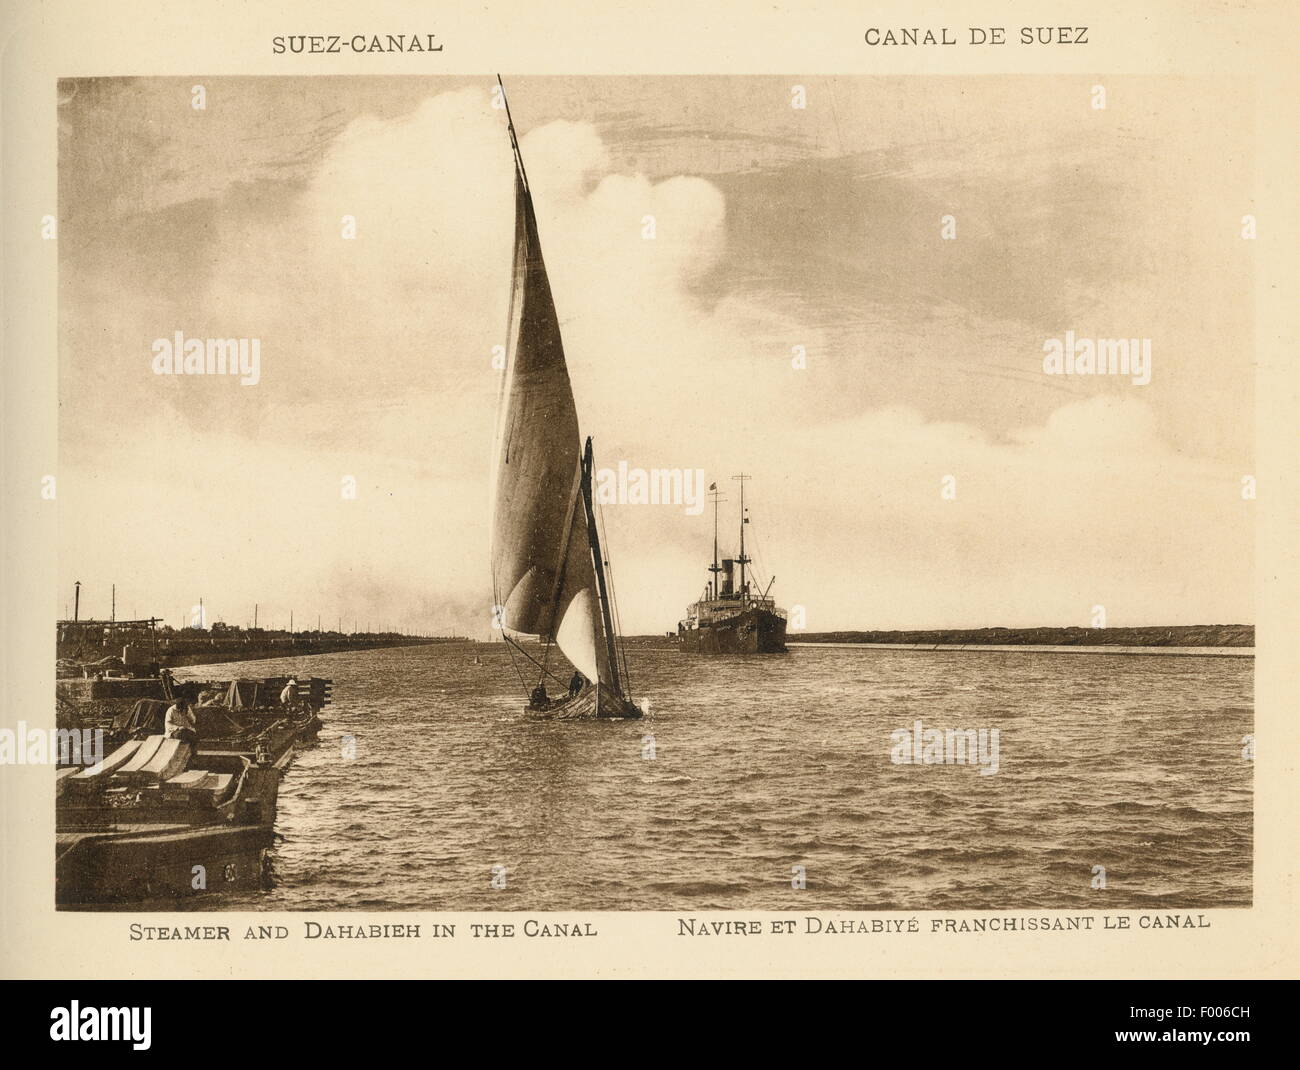 Suezkanal, Ägypten – 1900 – ein Segelboot (Dehabeah) und ein Dampfschiff in den Suez-Kanal. Stockfoto